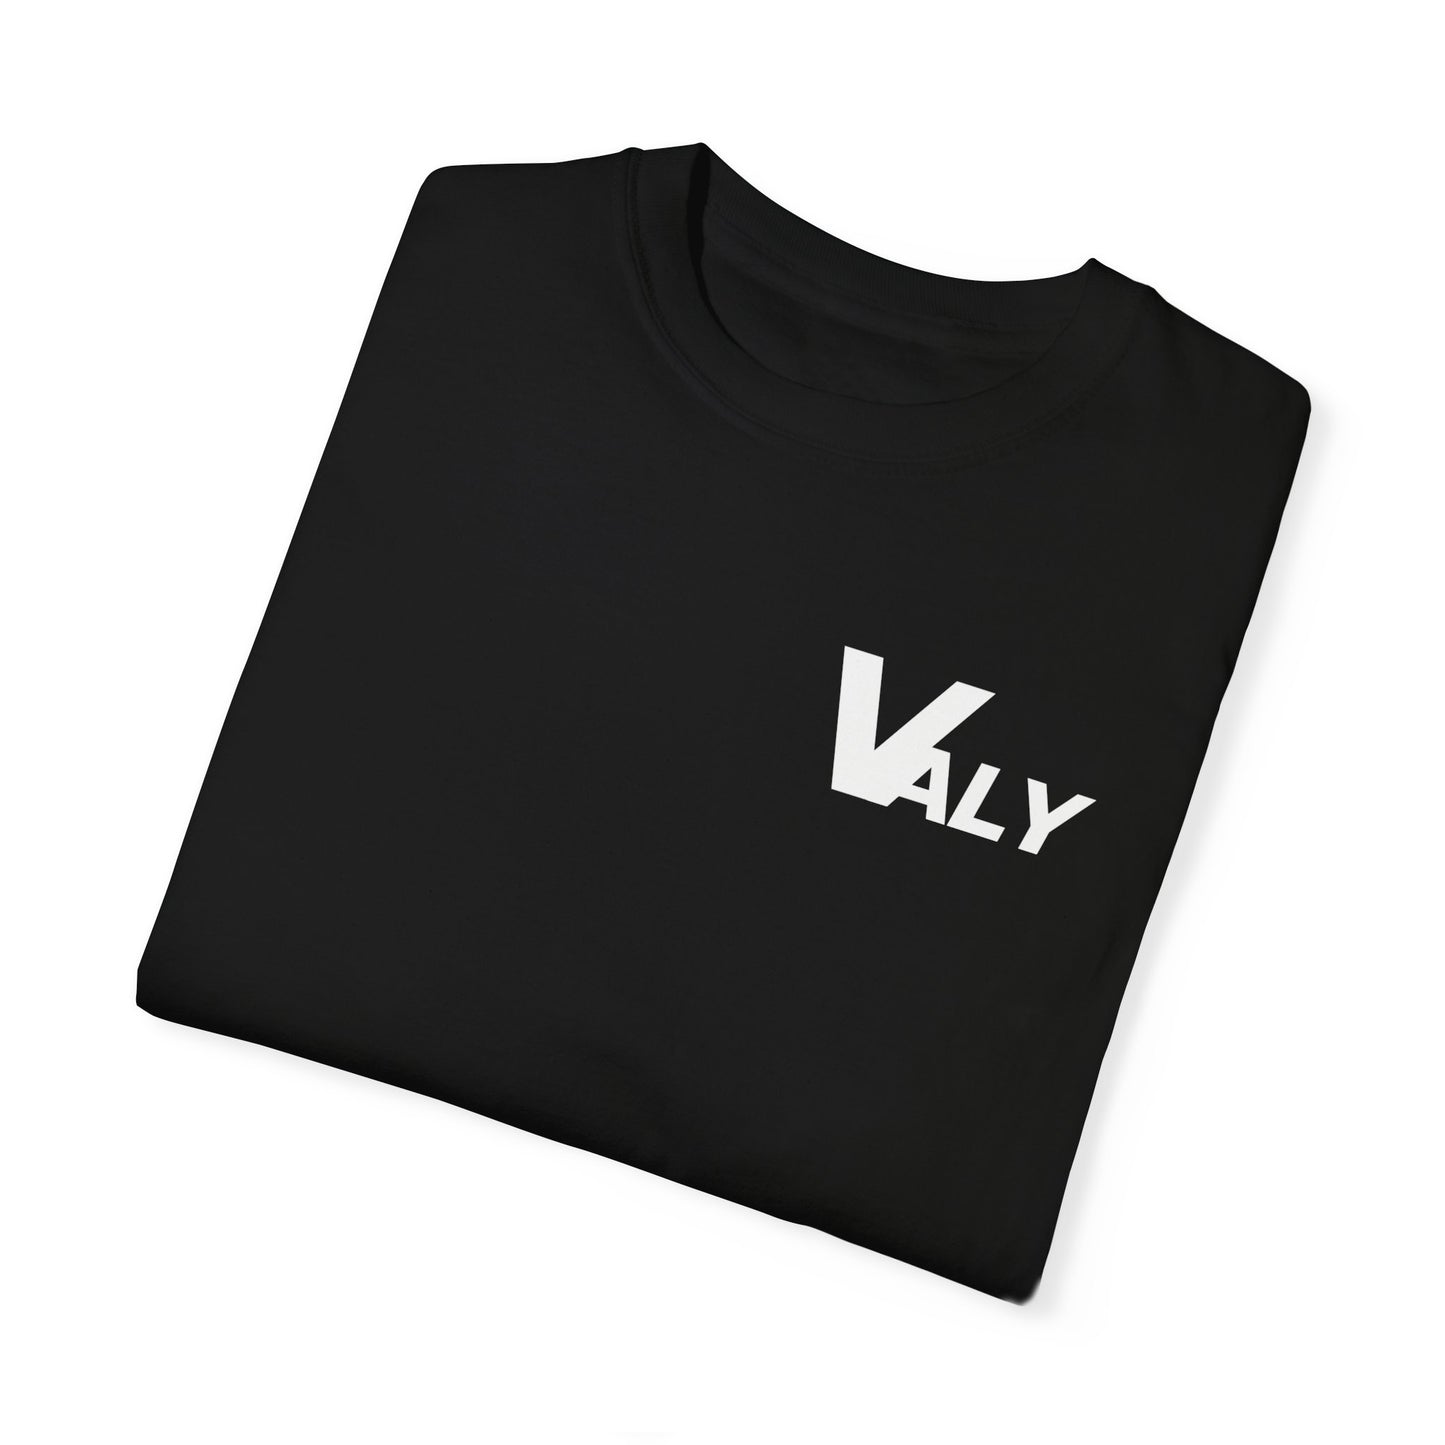 VALY Original T-Shirt - Black